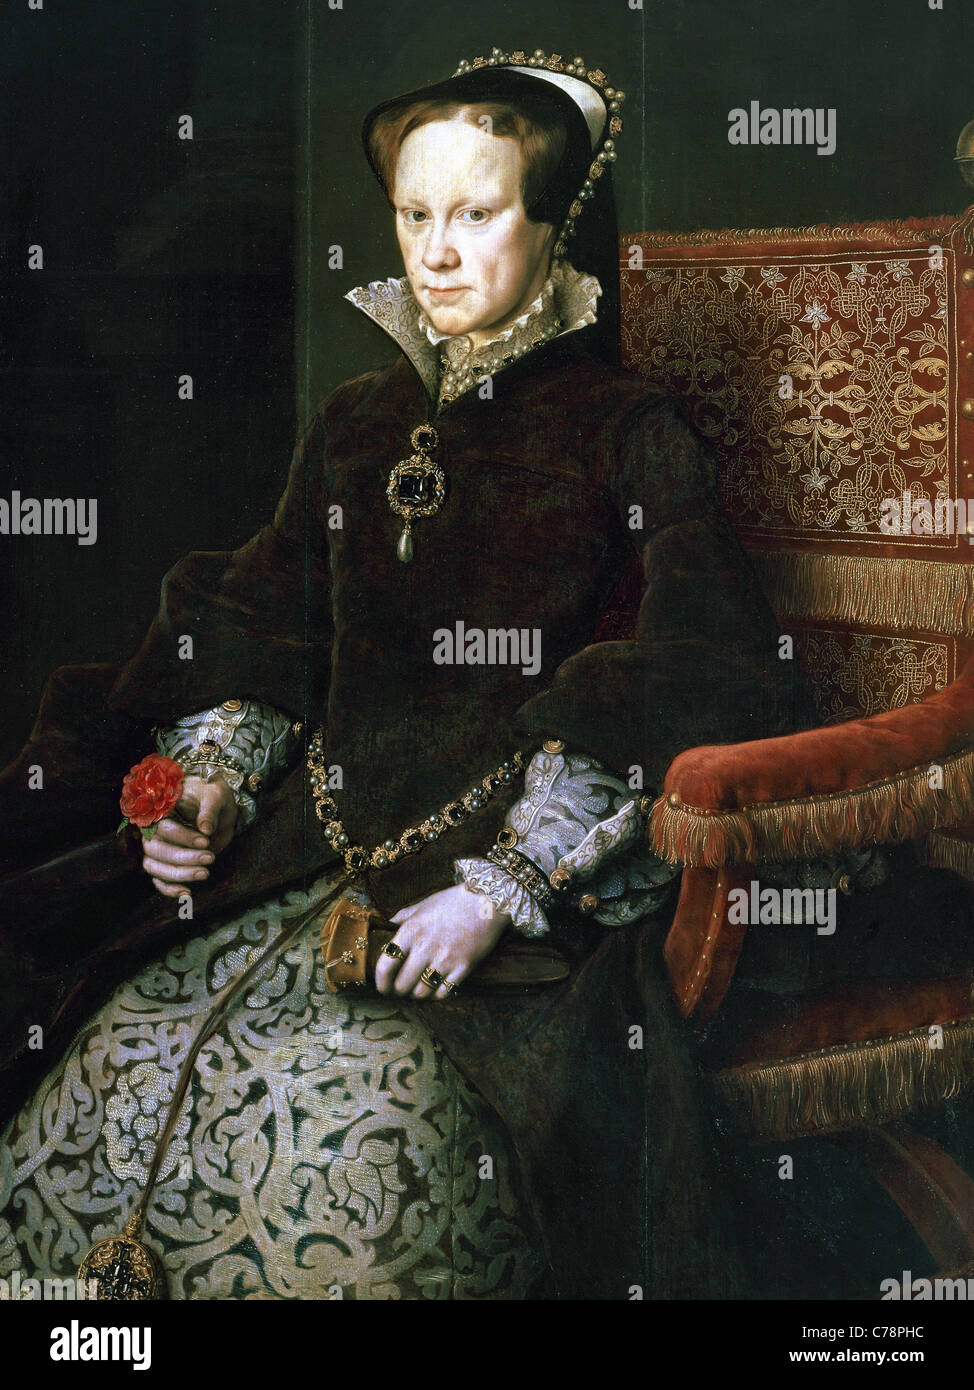 Maria i. von England (1516-1558). Königin von England und Irland. Porträt von Antonio Moro. Prado-Museum. Madrid. Spanien. Stockfoto